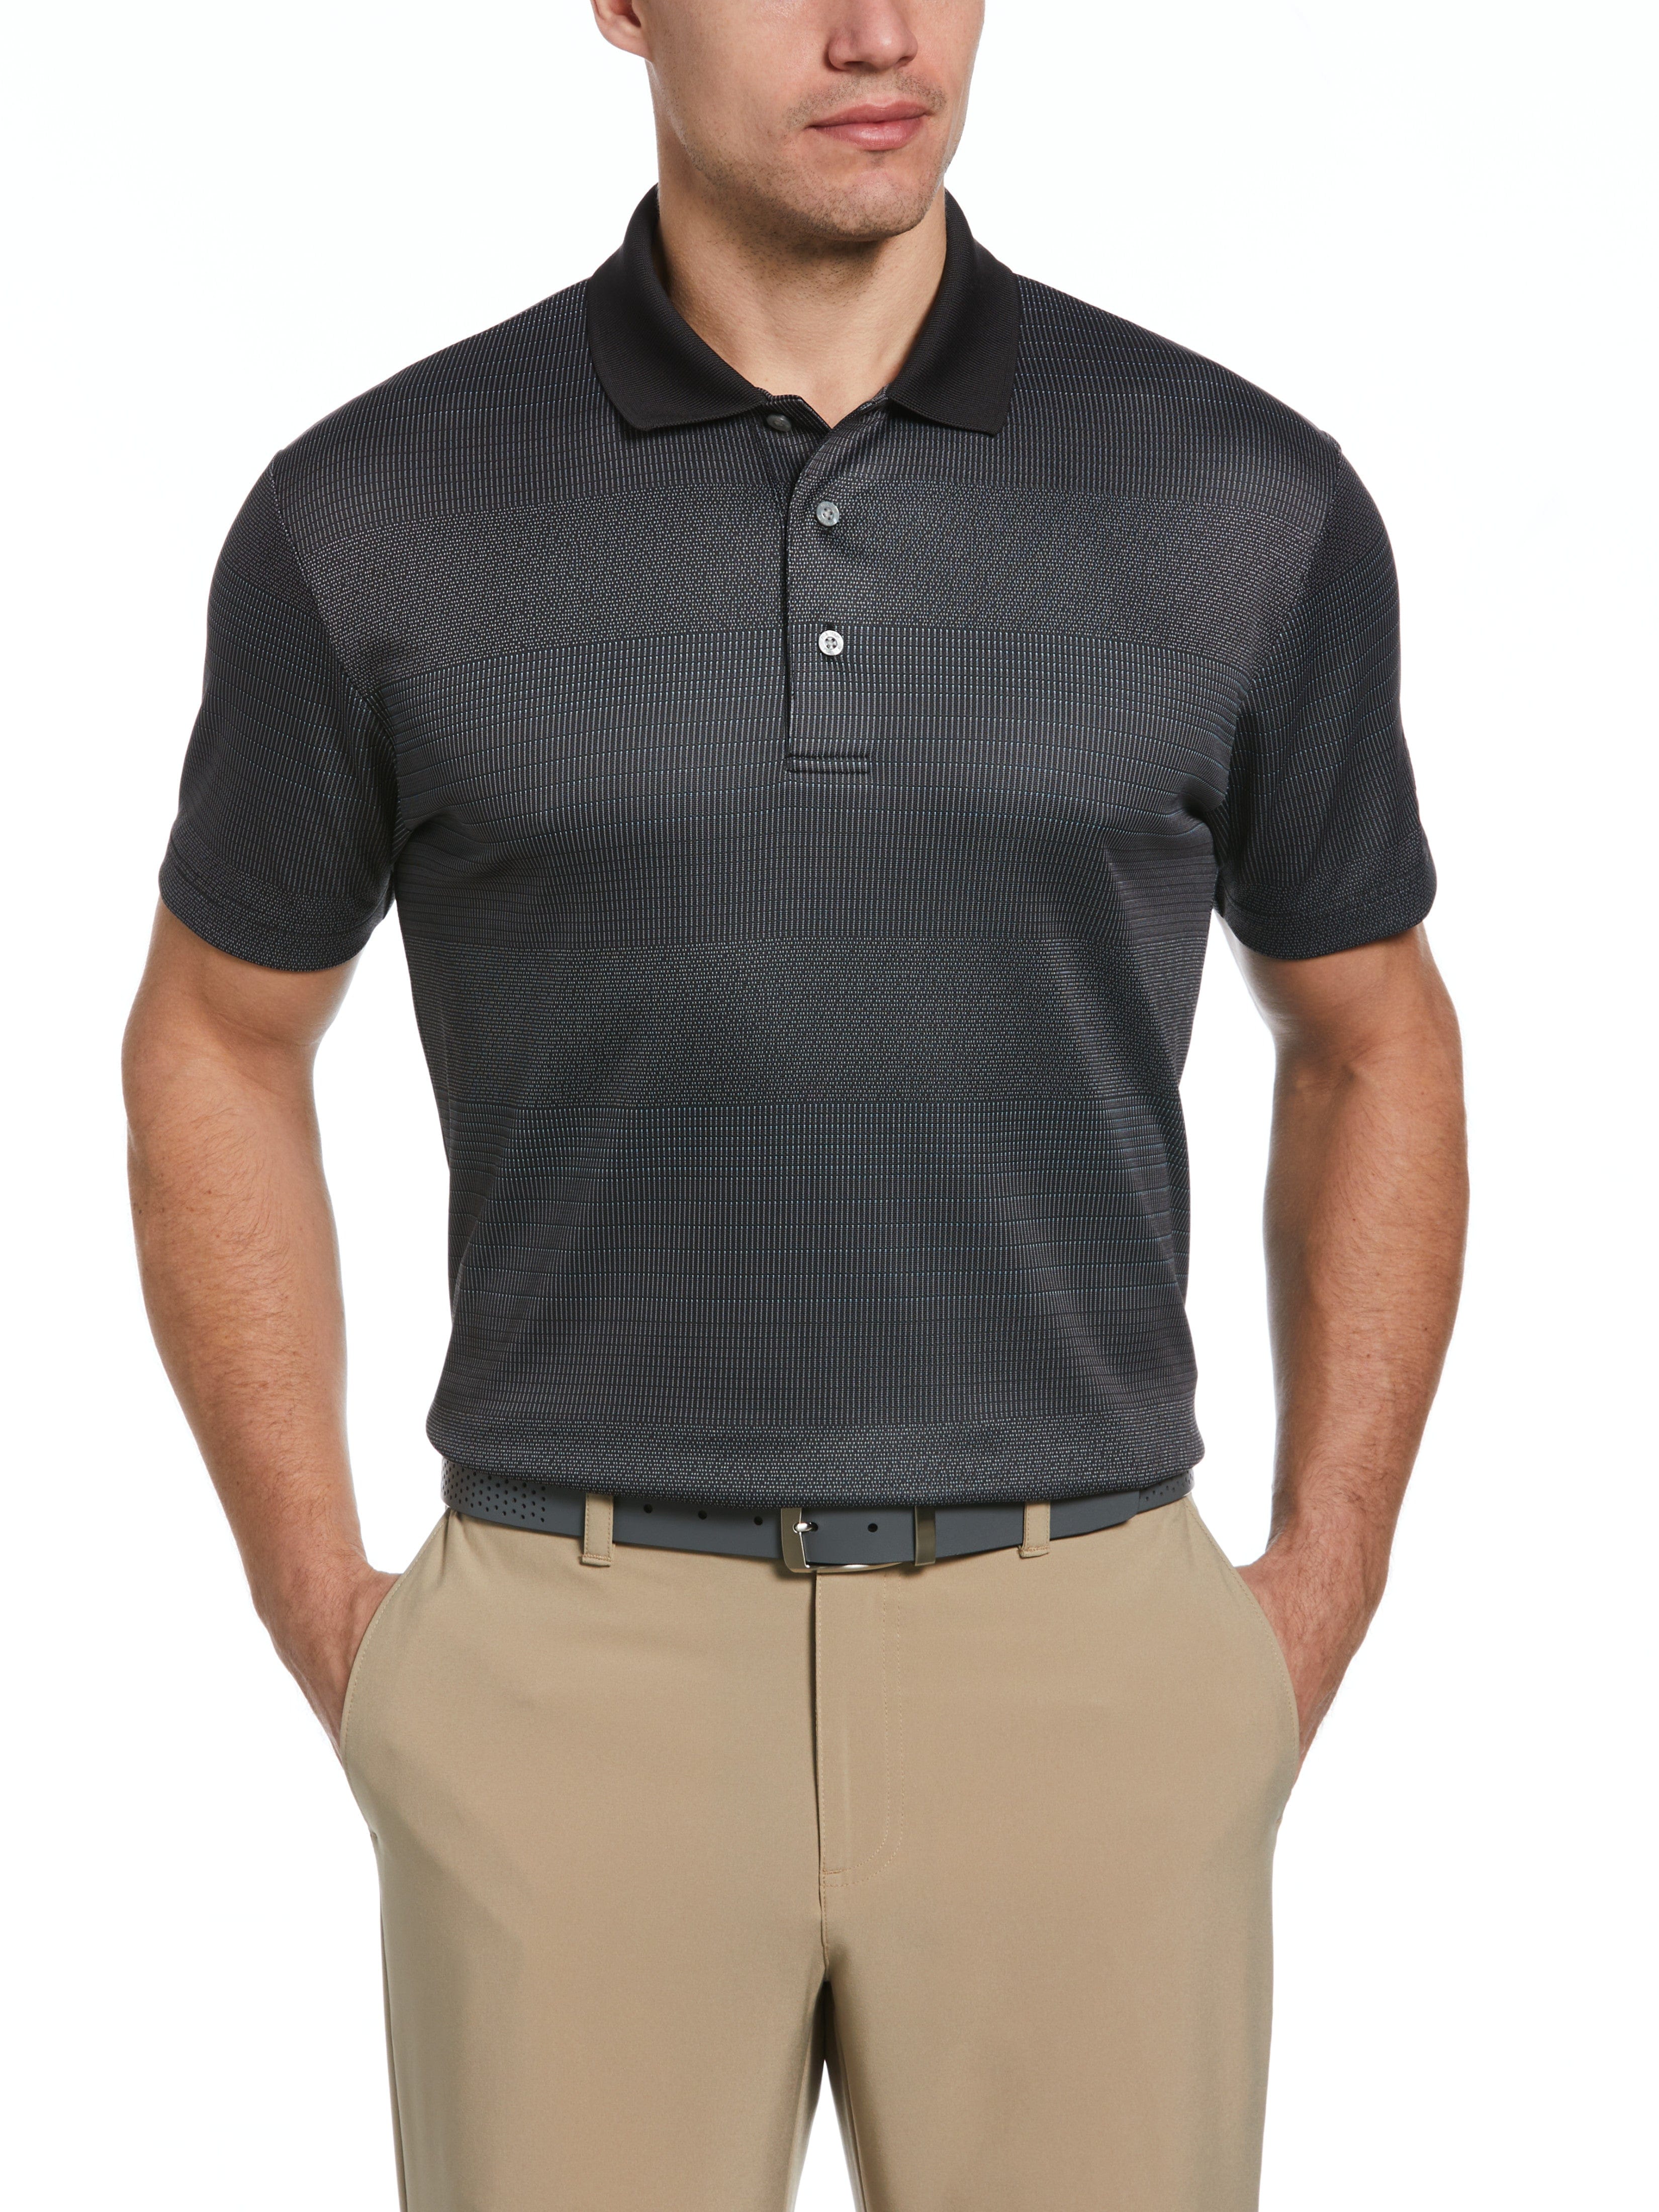 PGA TOUR Apparel Mens Large Scale Birdseye Stripe Jacquard Golf Polo Shirt, Size 3XL, Black, 100% Polyester | Golf Apparel Shop